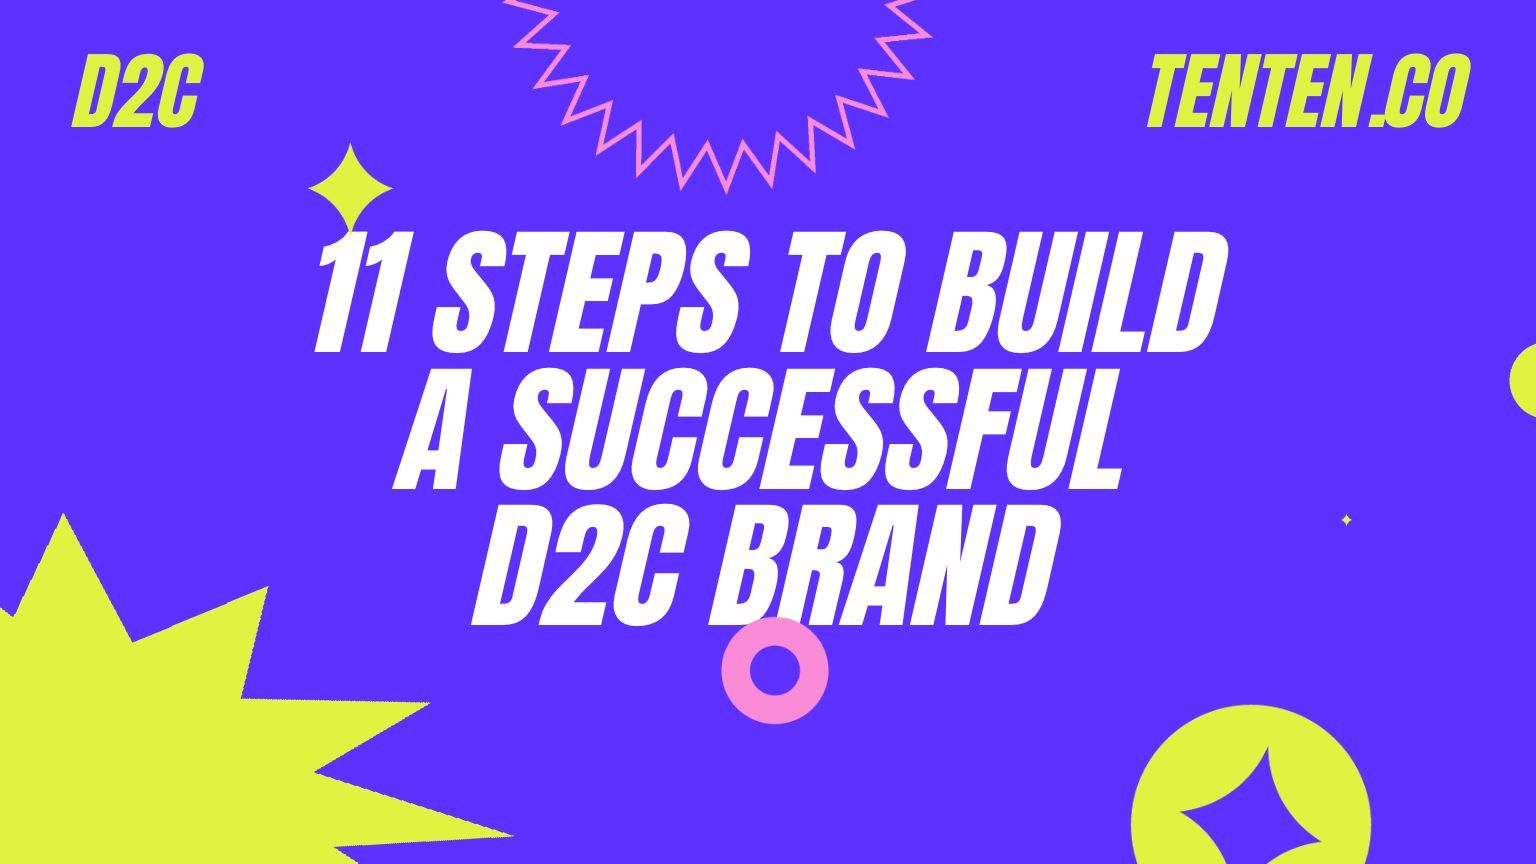 建立成功的 D2C 品牌的 11 個步驟